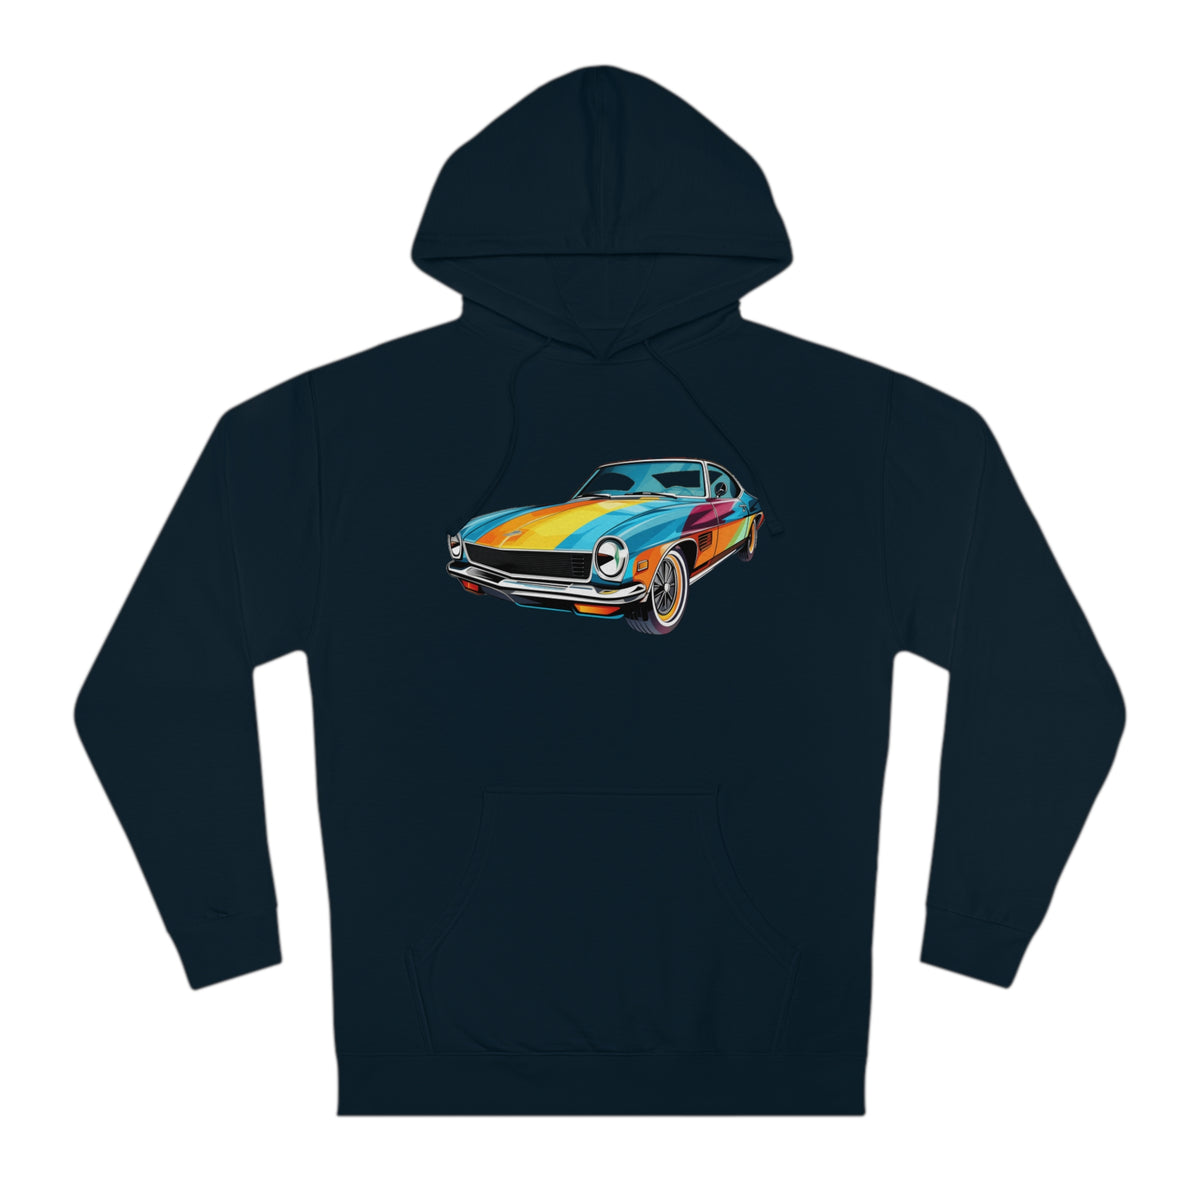 "Retro Racer" Hoodie/Hooded Sweatshirt